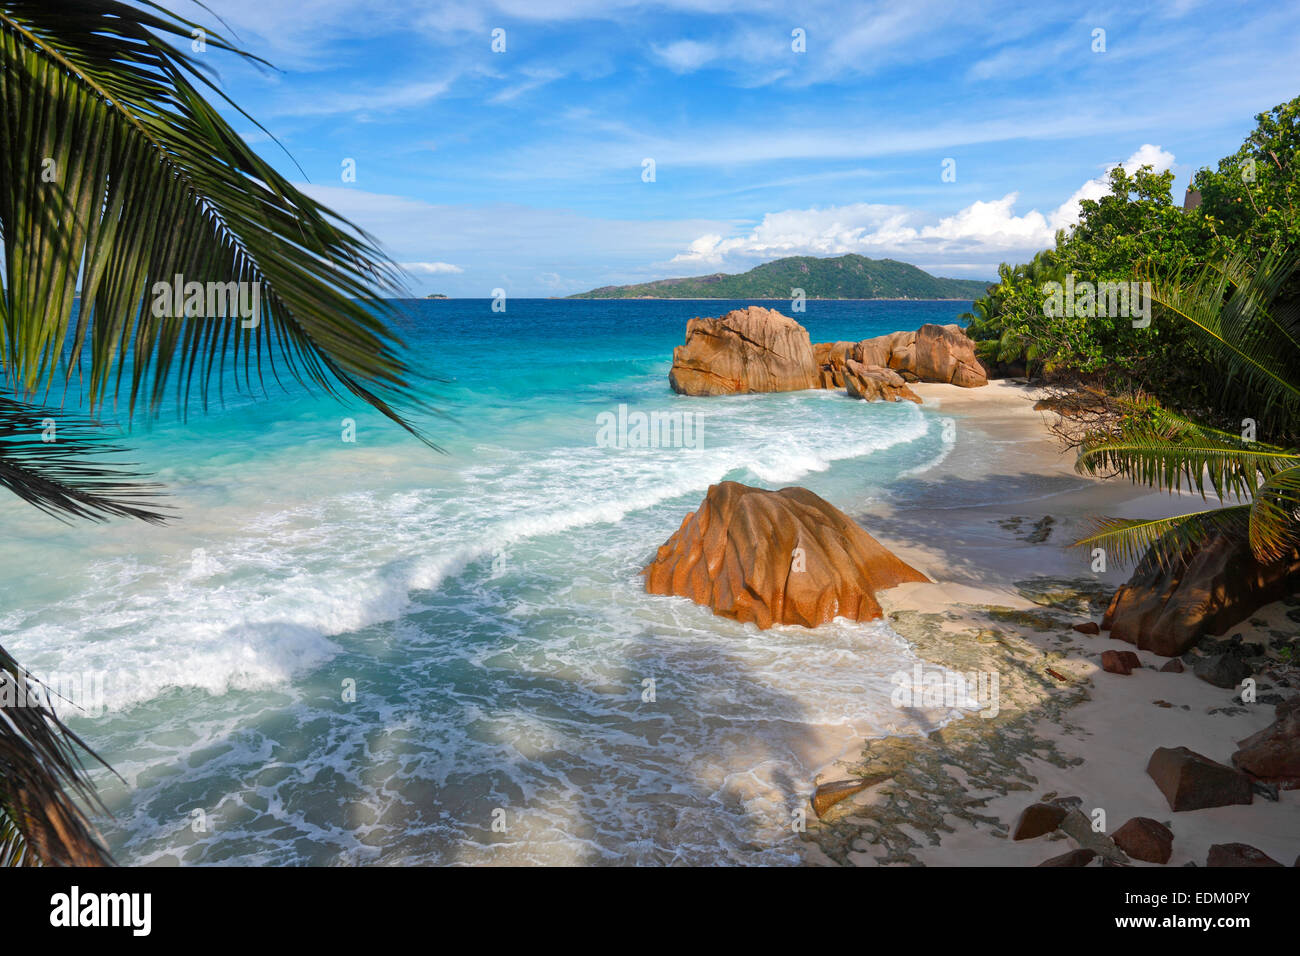 La plage, La Digue, Seychelles Banque D'Images